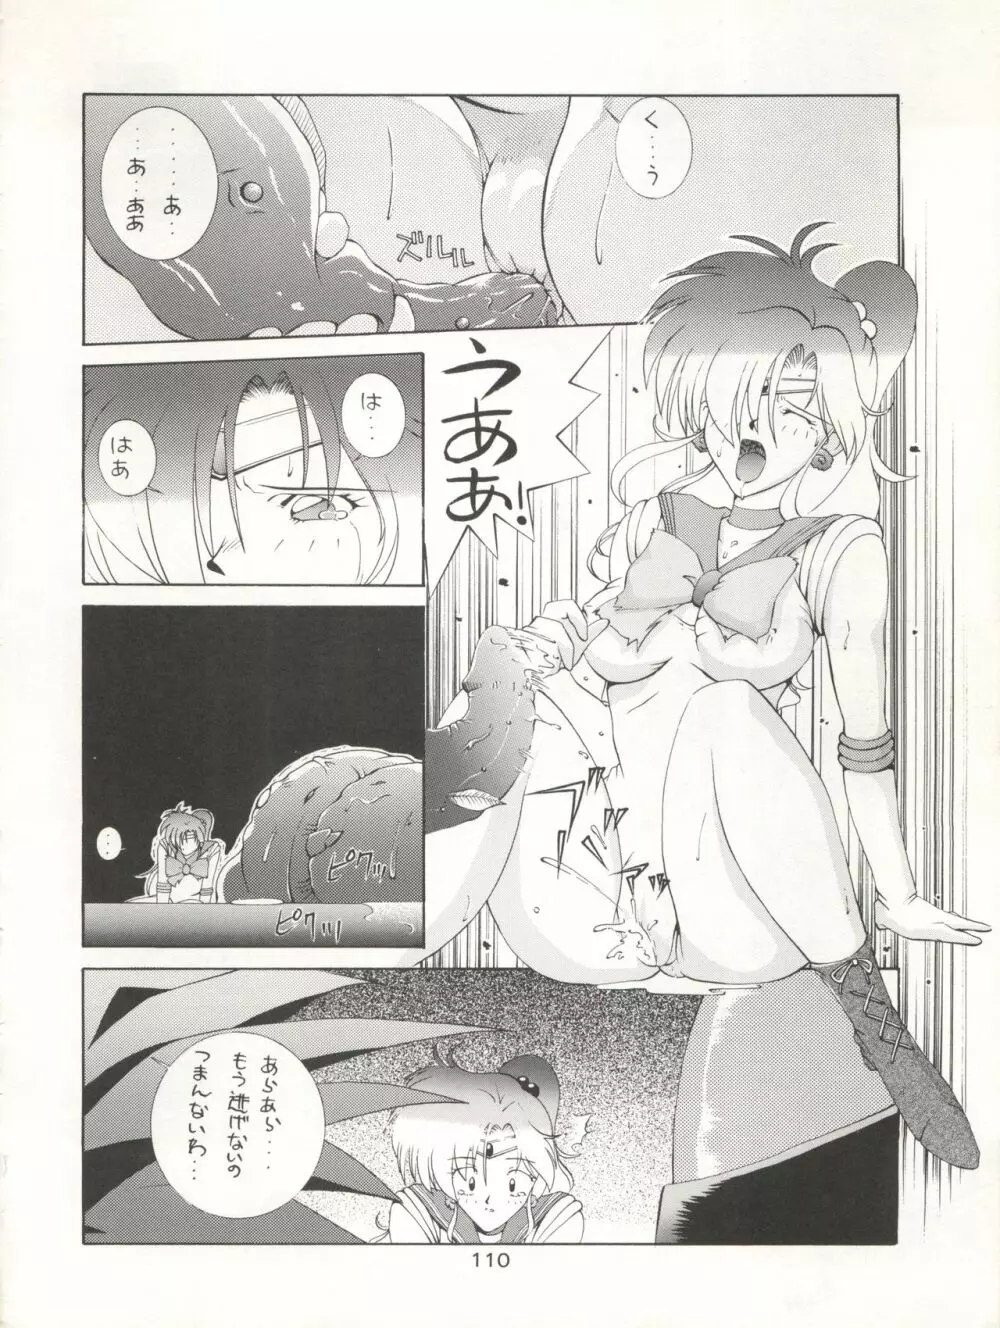 KATZE 7 上巻 - page111